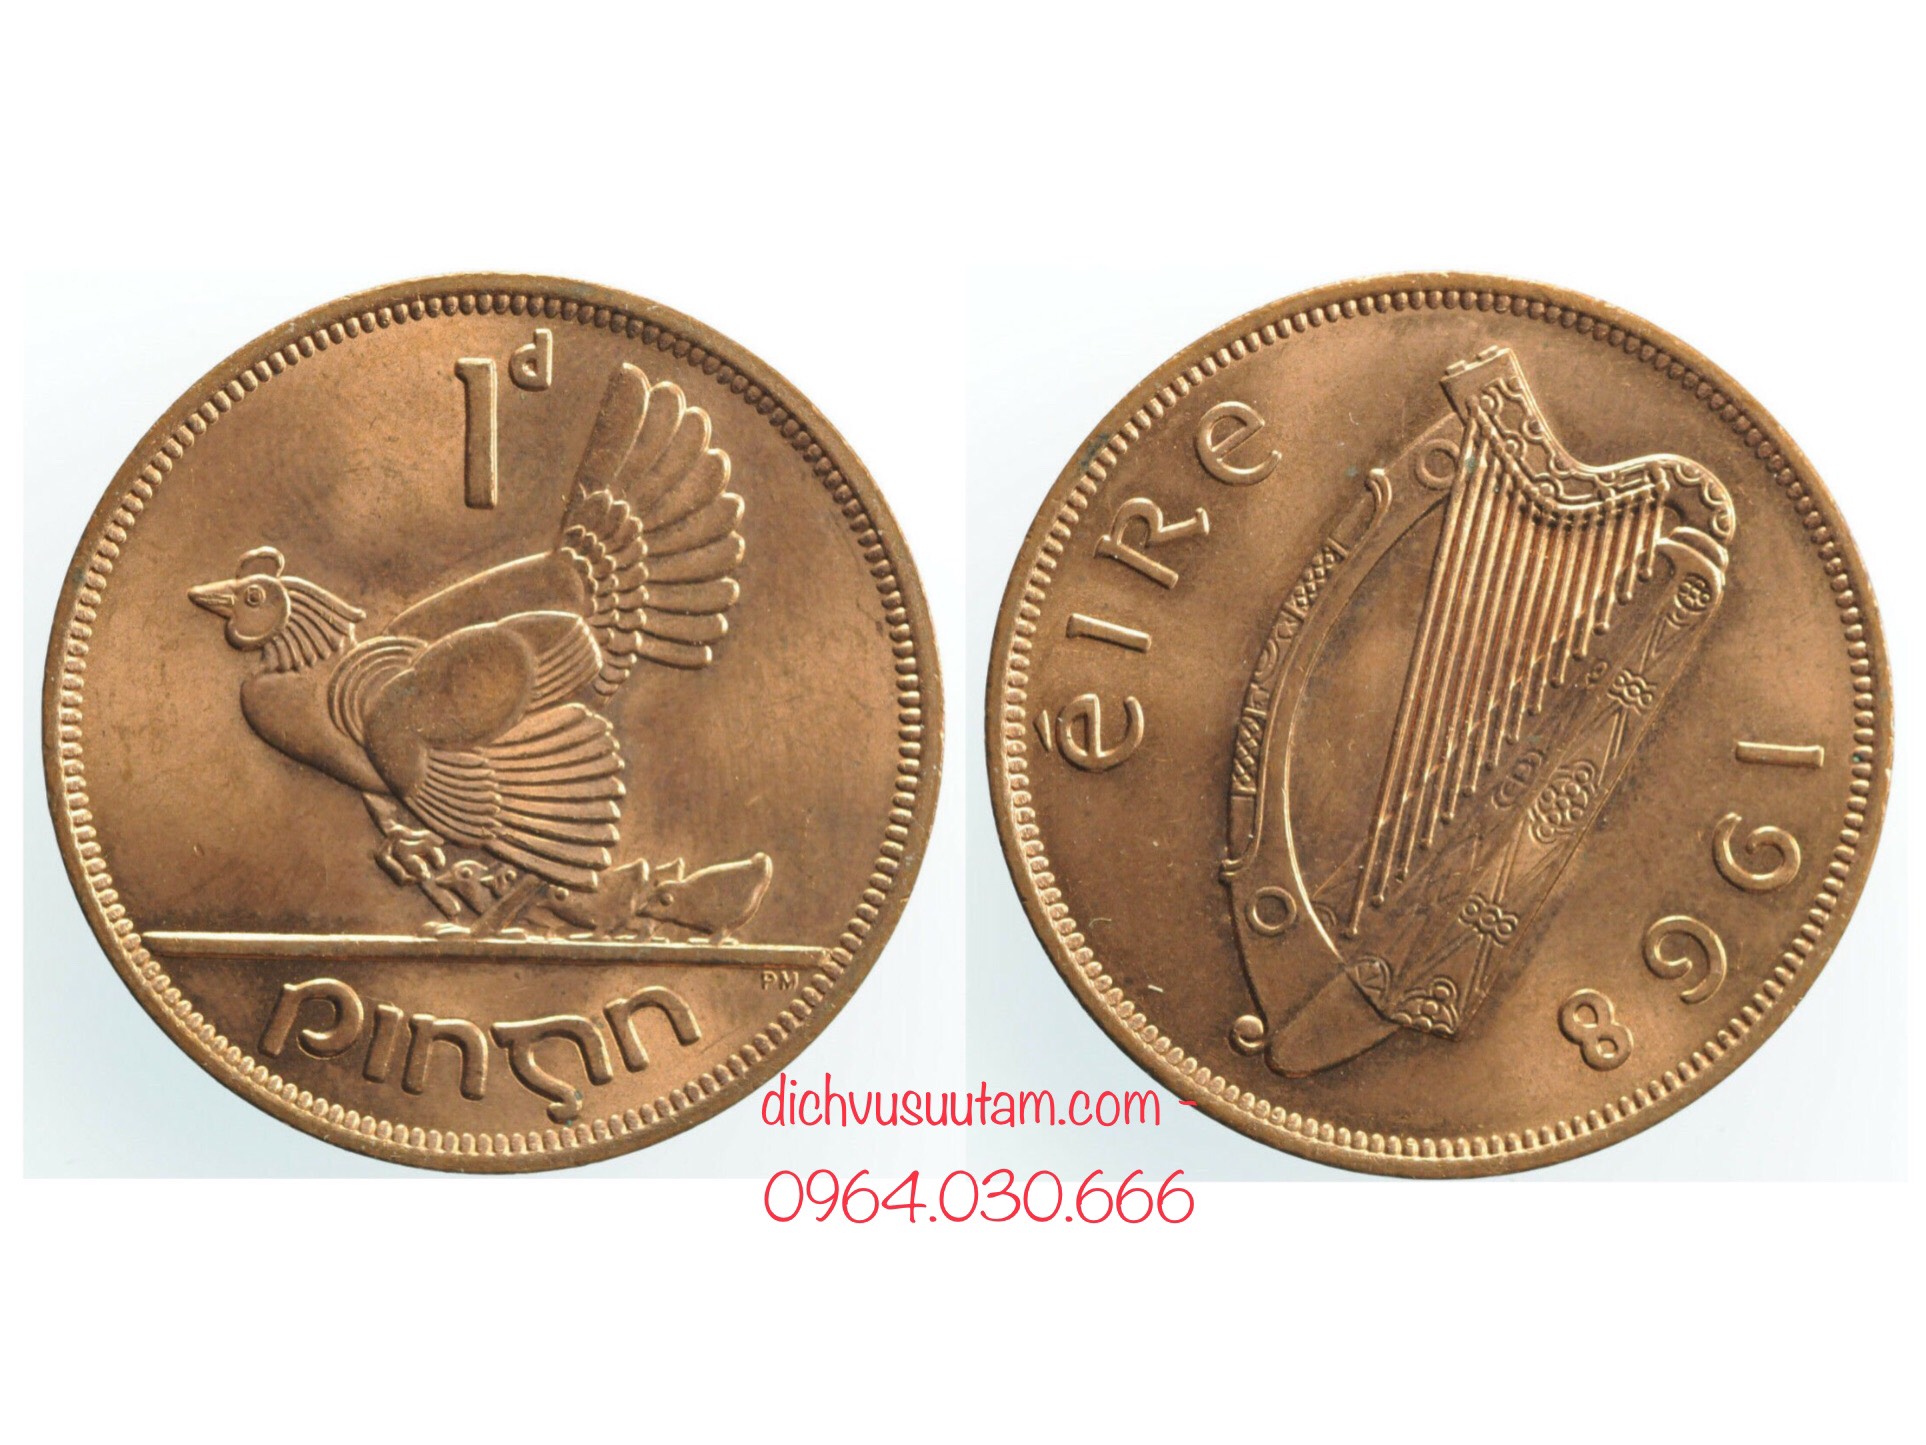 Đồng xu con Gà 1 penny Ireland, 1 trong 10 đồng xu may mắn nhất thế giới